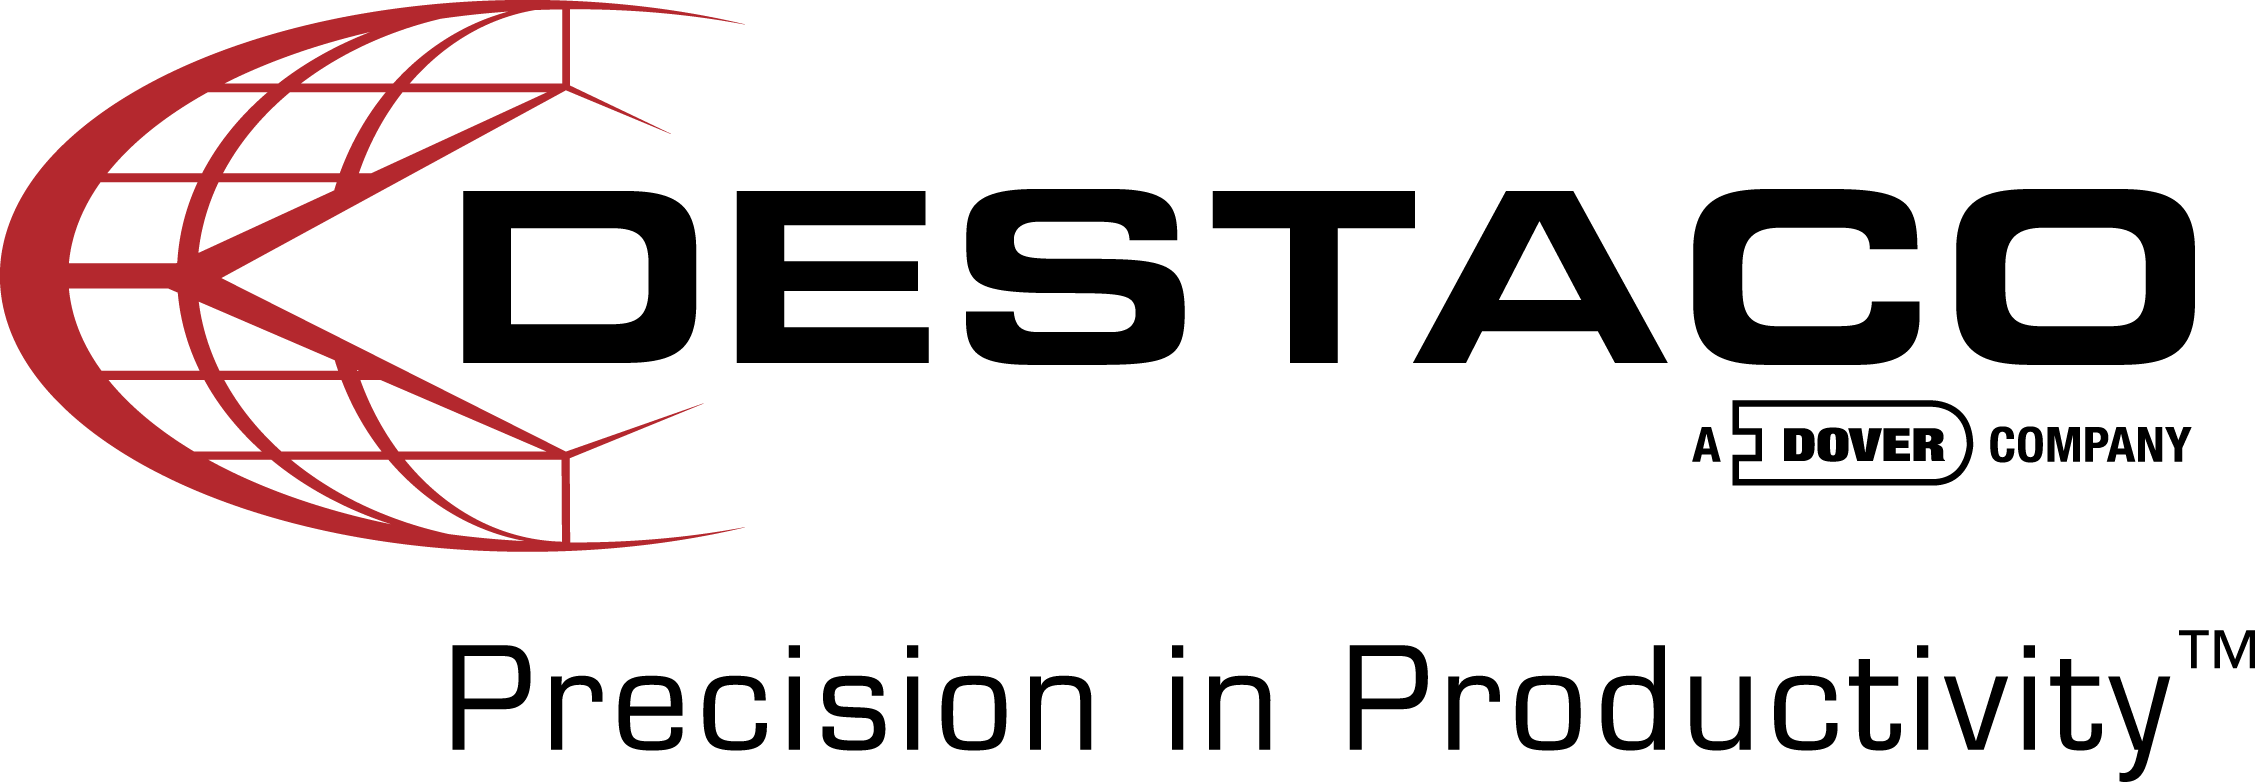 DE-STA-CO Logo - DESTACO